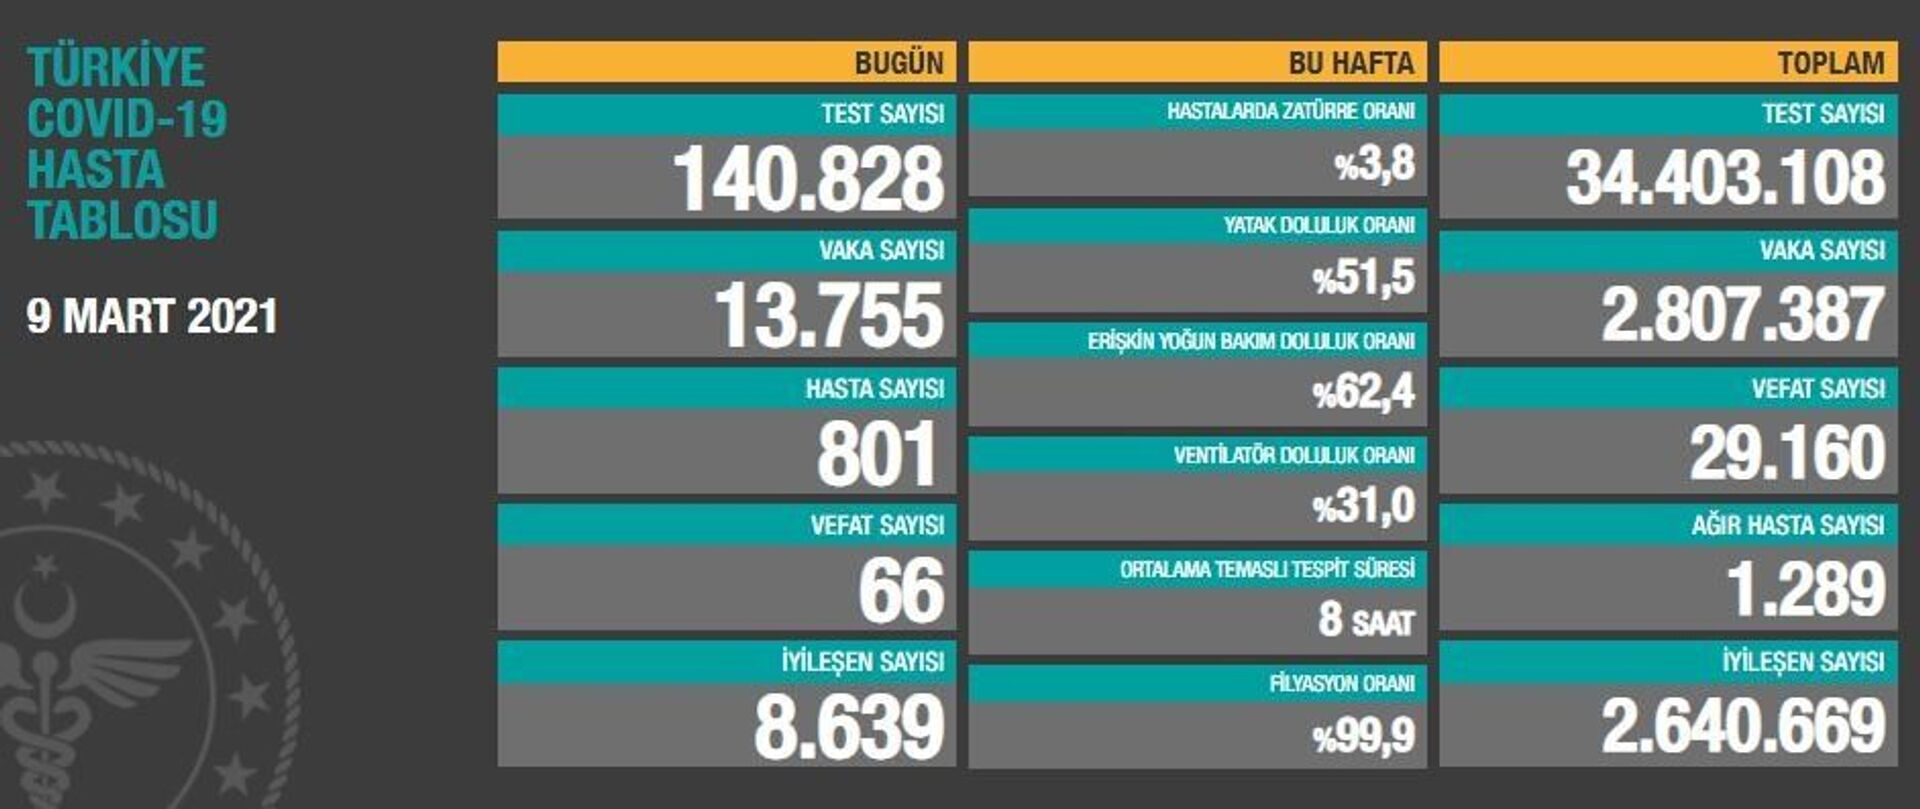 Türkiye'de son 24 saatte koronavirüsten 66 kişi hayatını kaybetti, 13 bin 755 kişinin testi pozitif çıktı - Sputnik Türkiye, 1920, 09.03.2021